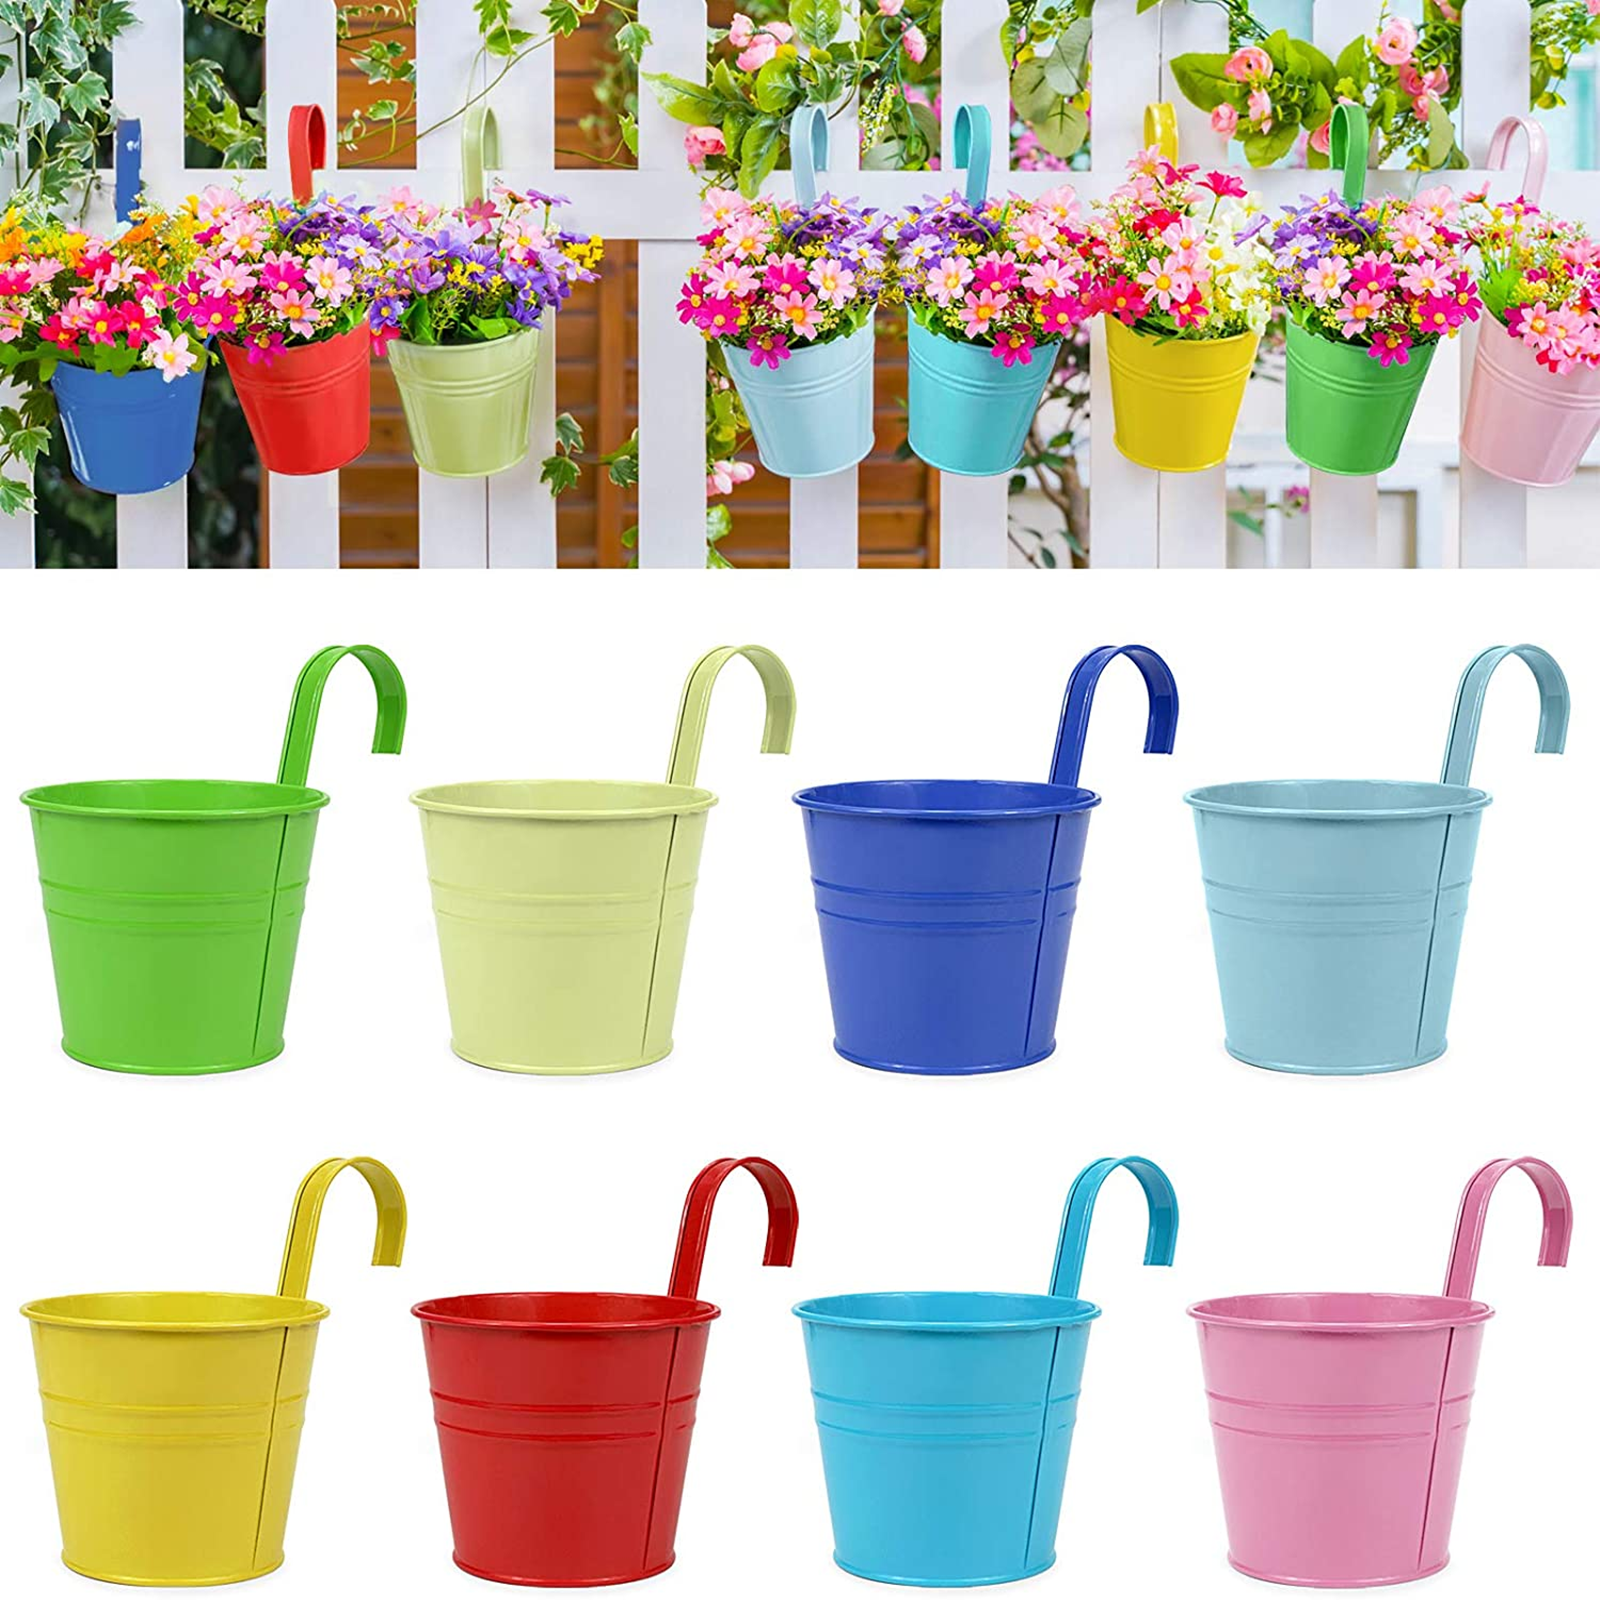 Hanging Portable Flower Vases Garden Balcony Planters Metal Iron Bucket Pots New 